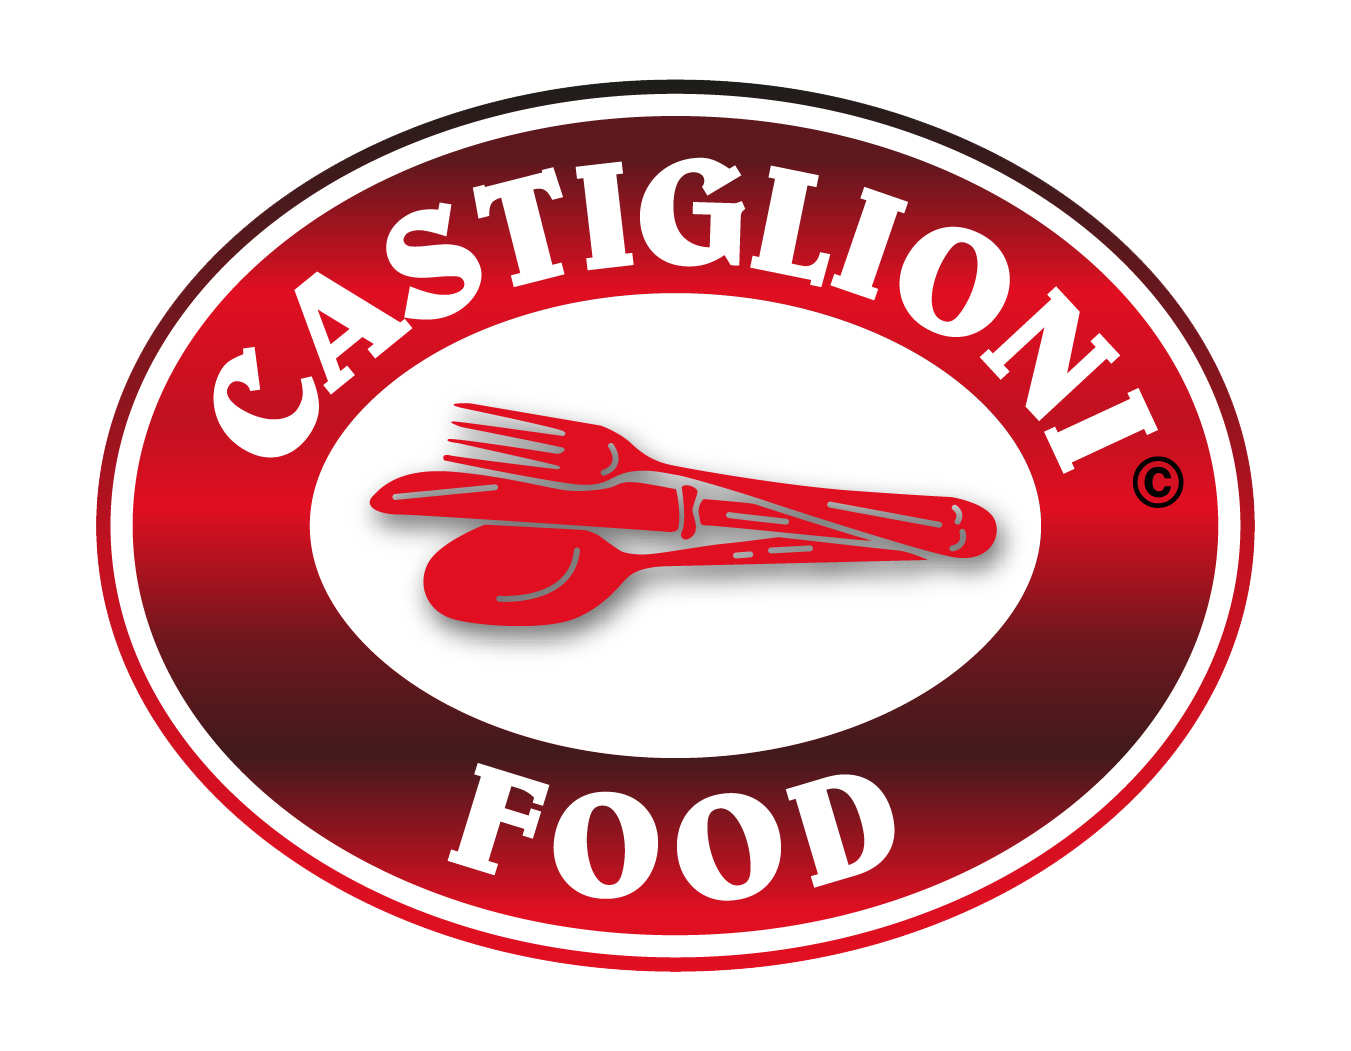 Castiglioni Food